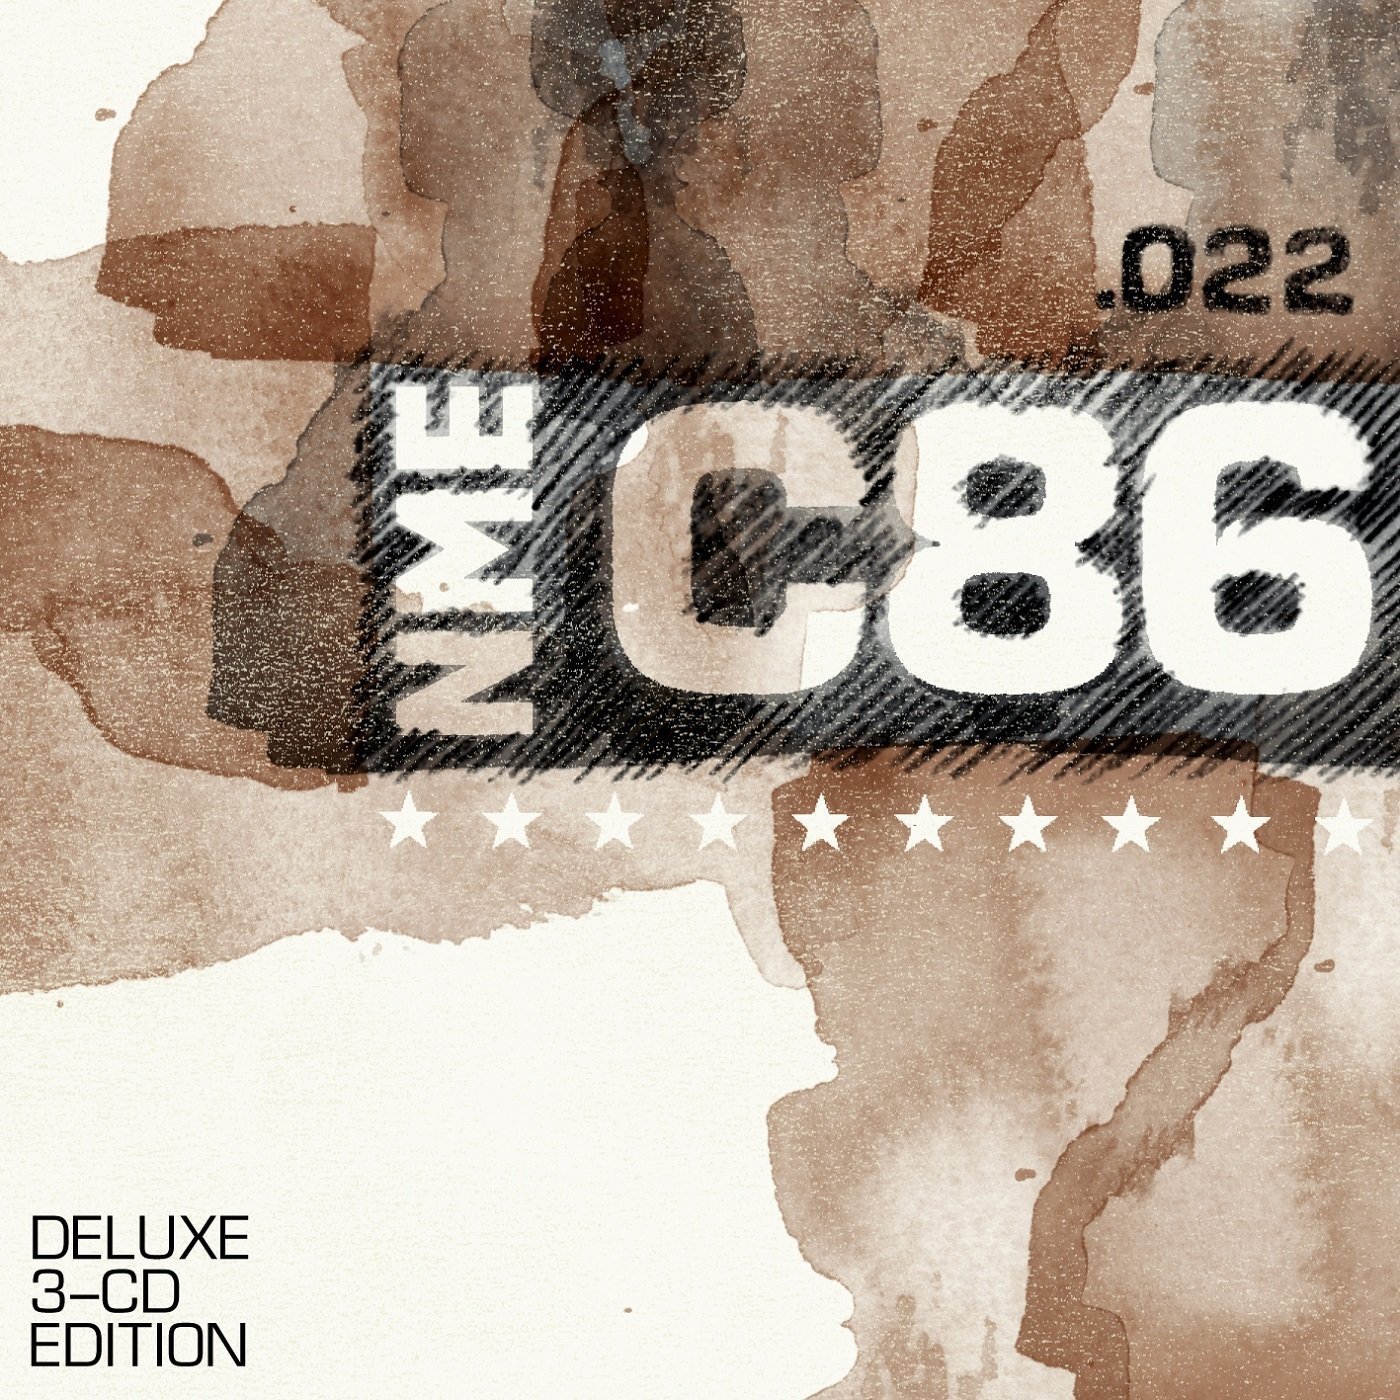 Audio Cd NME C86 Deluxe Edition (3 Cd) NUOVO SIGILLATO, EDIZIONE DEL 09/06/2014 SUBITO DISPONIBILE